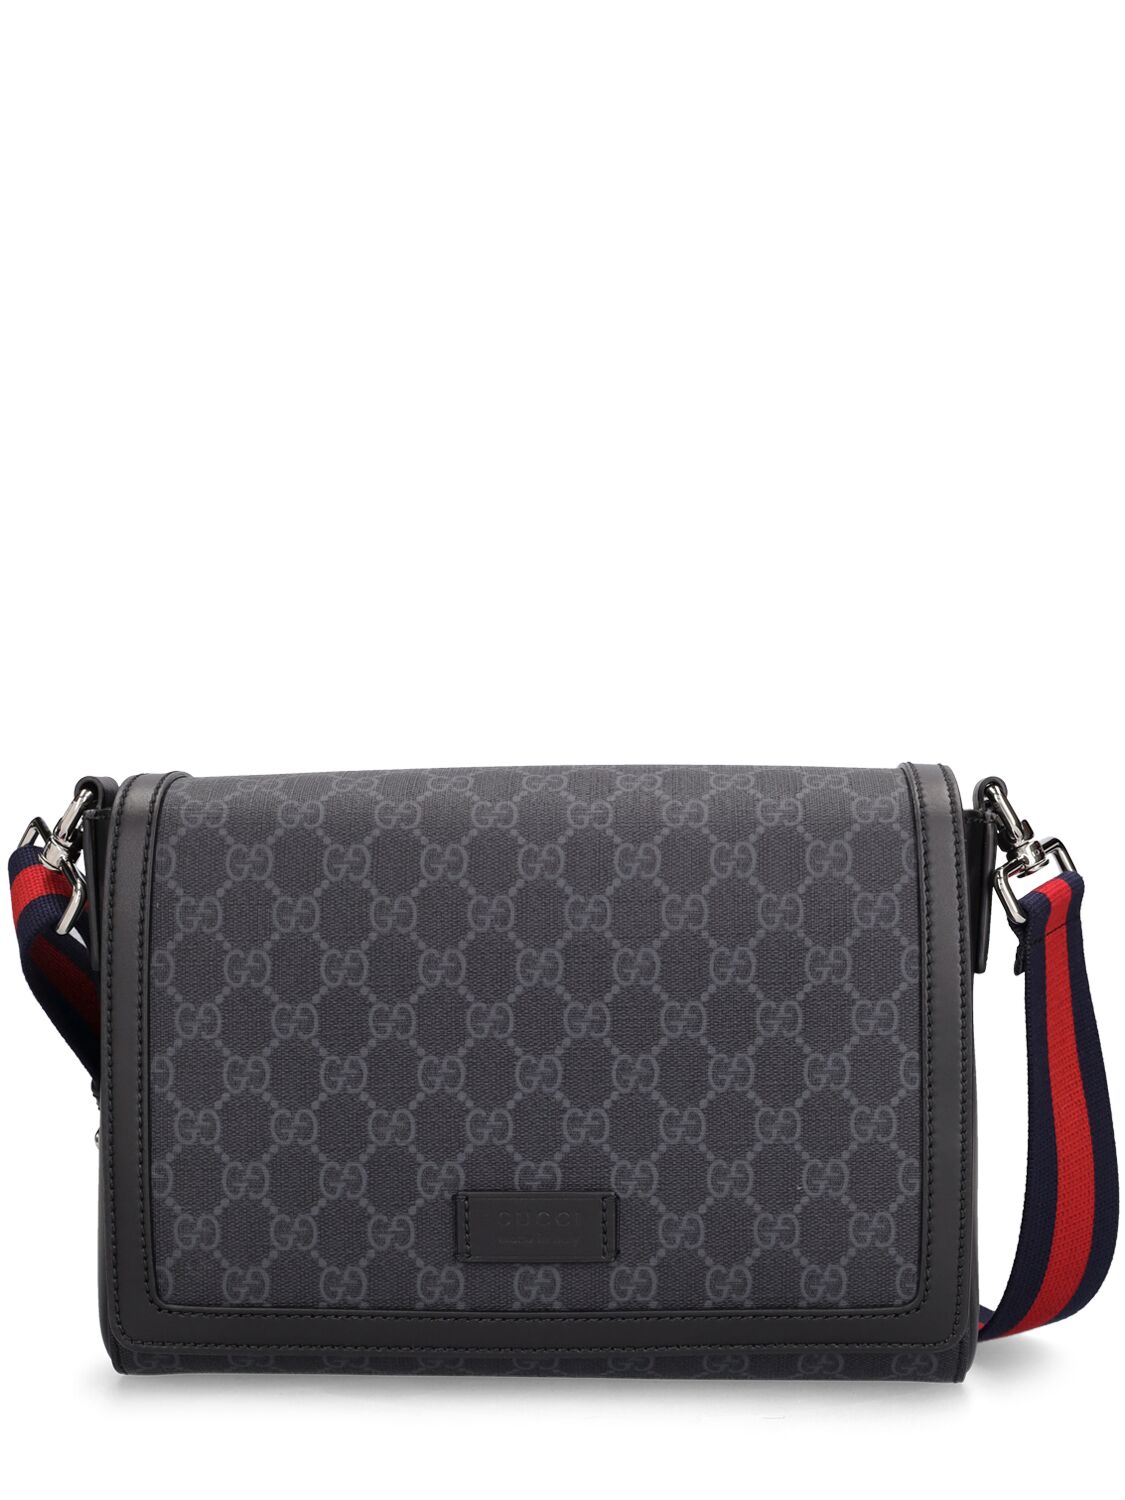 Gucci Gg Supreme Crossbody Bag In Black